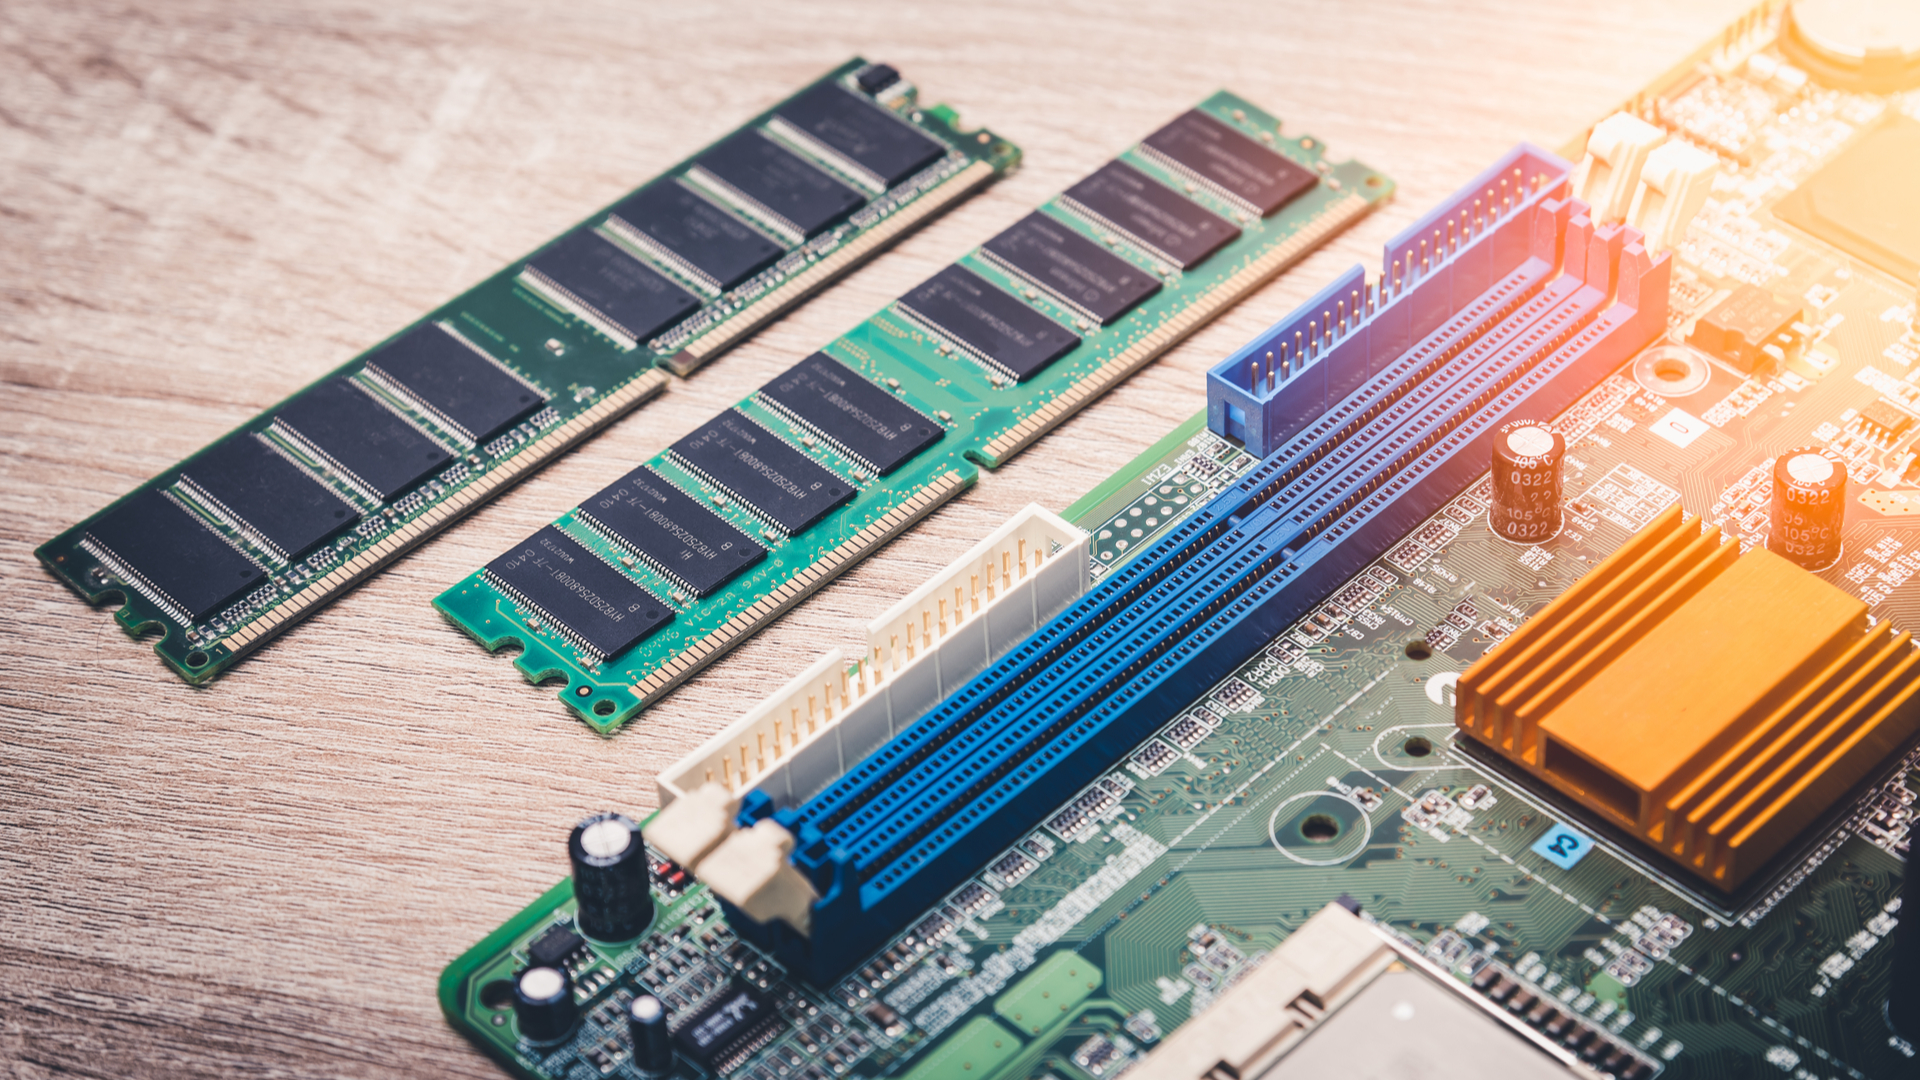 RAM là gì? Bộ nhớ RAM có những chức năng gì?